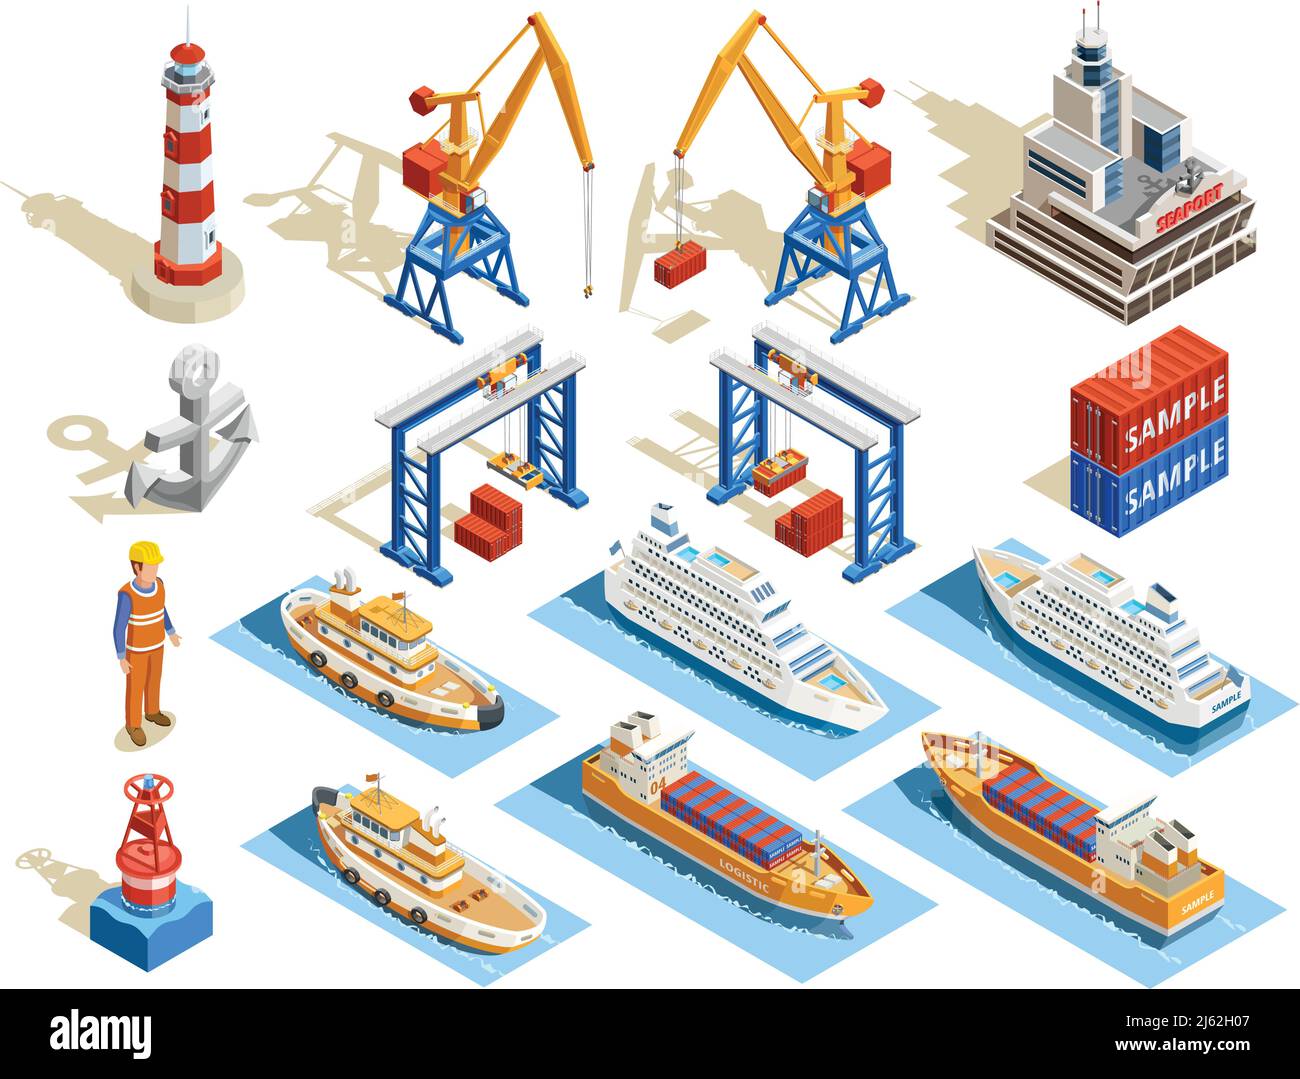 Seaport ensemble isométrique de navires de croisière industriels ouvrier de remorqueurs marins anchor grues conteneurs phare illustration vectorielle isolée Illustration de Vecteur